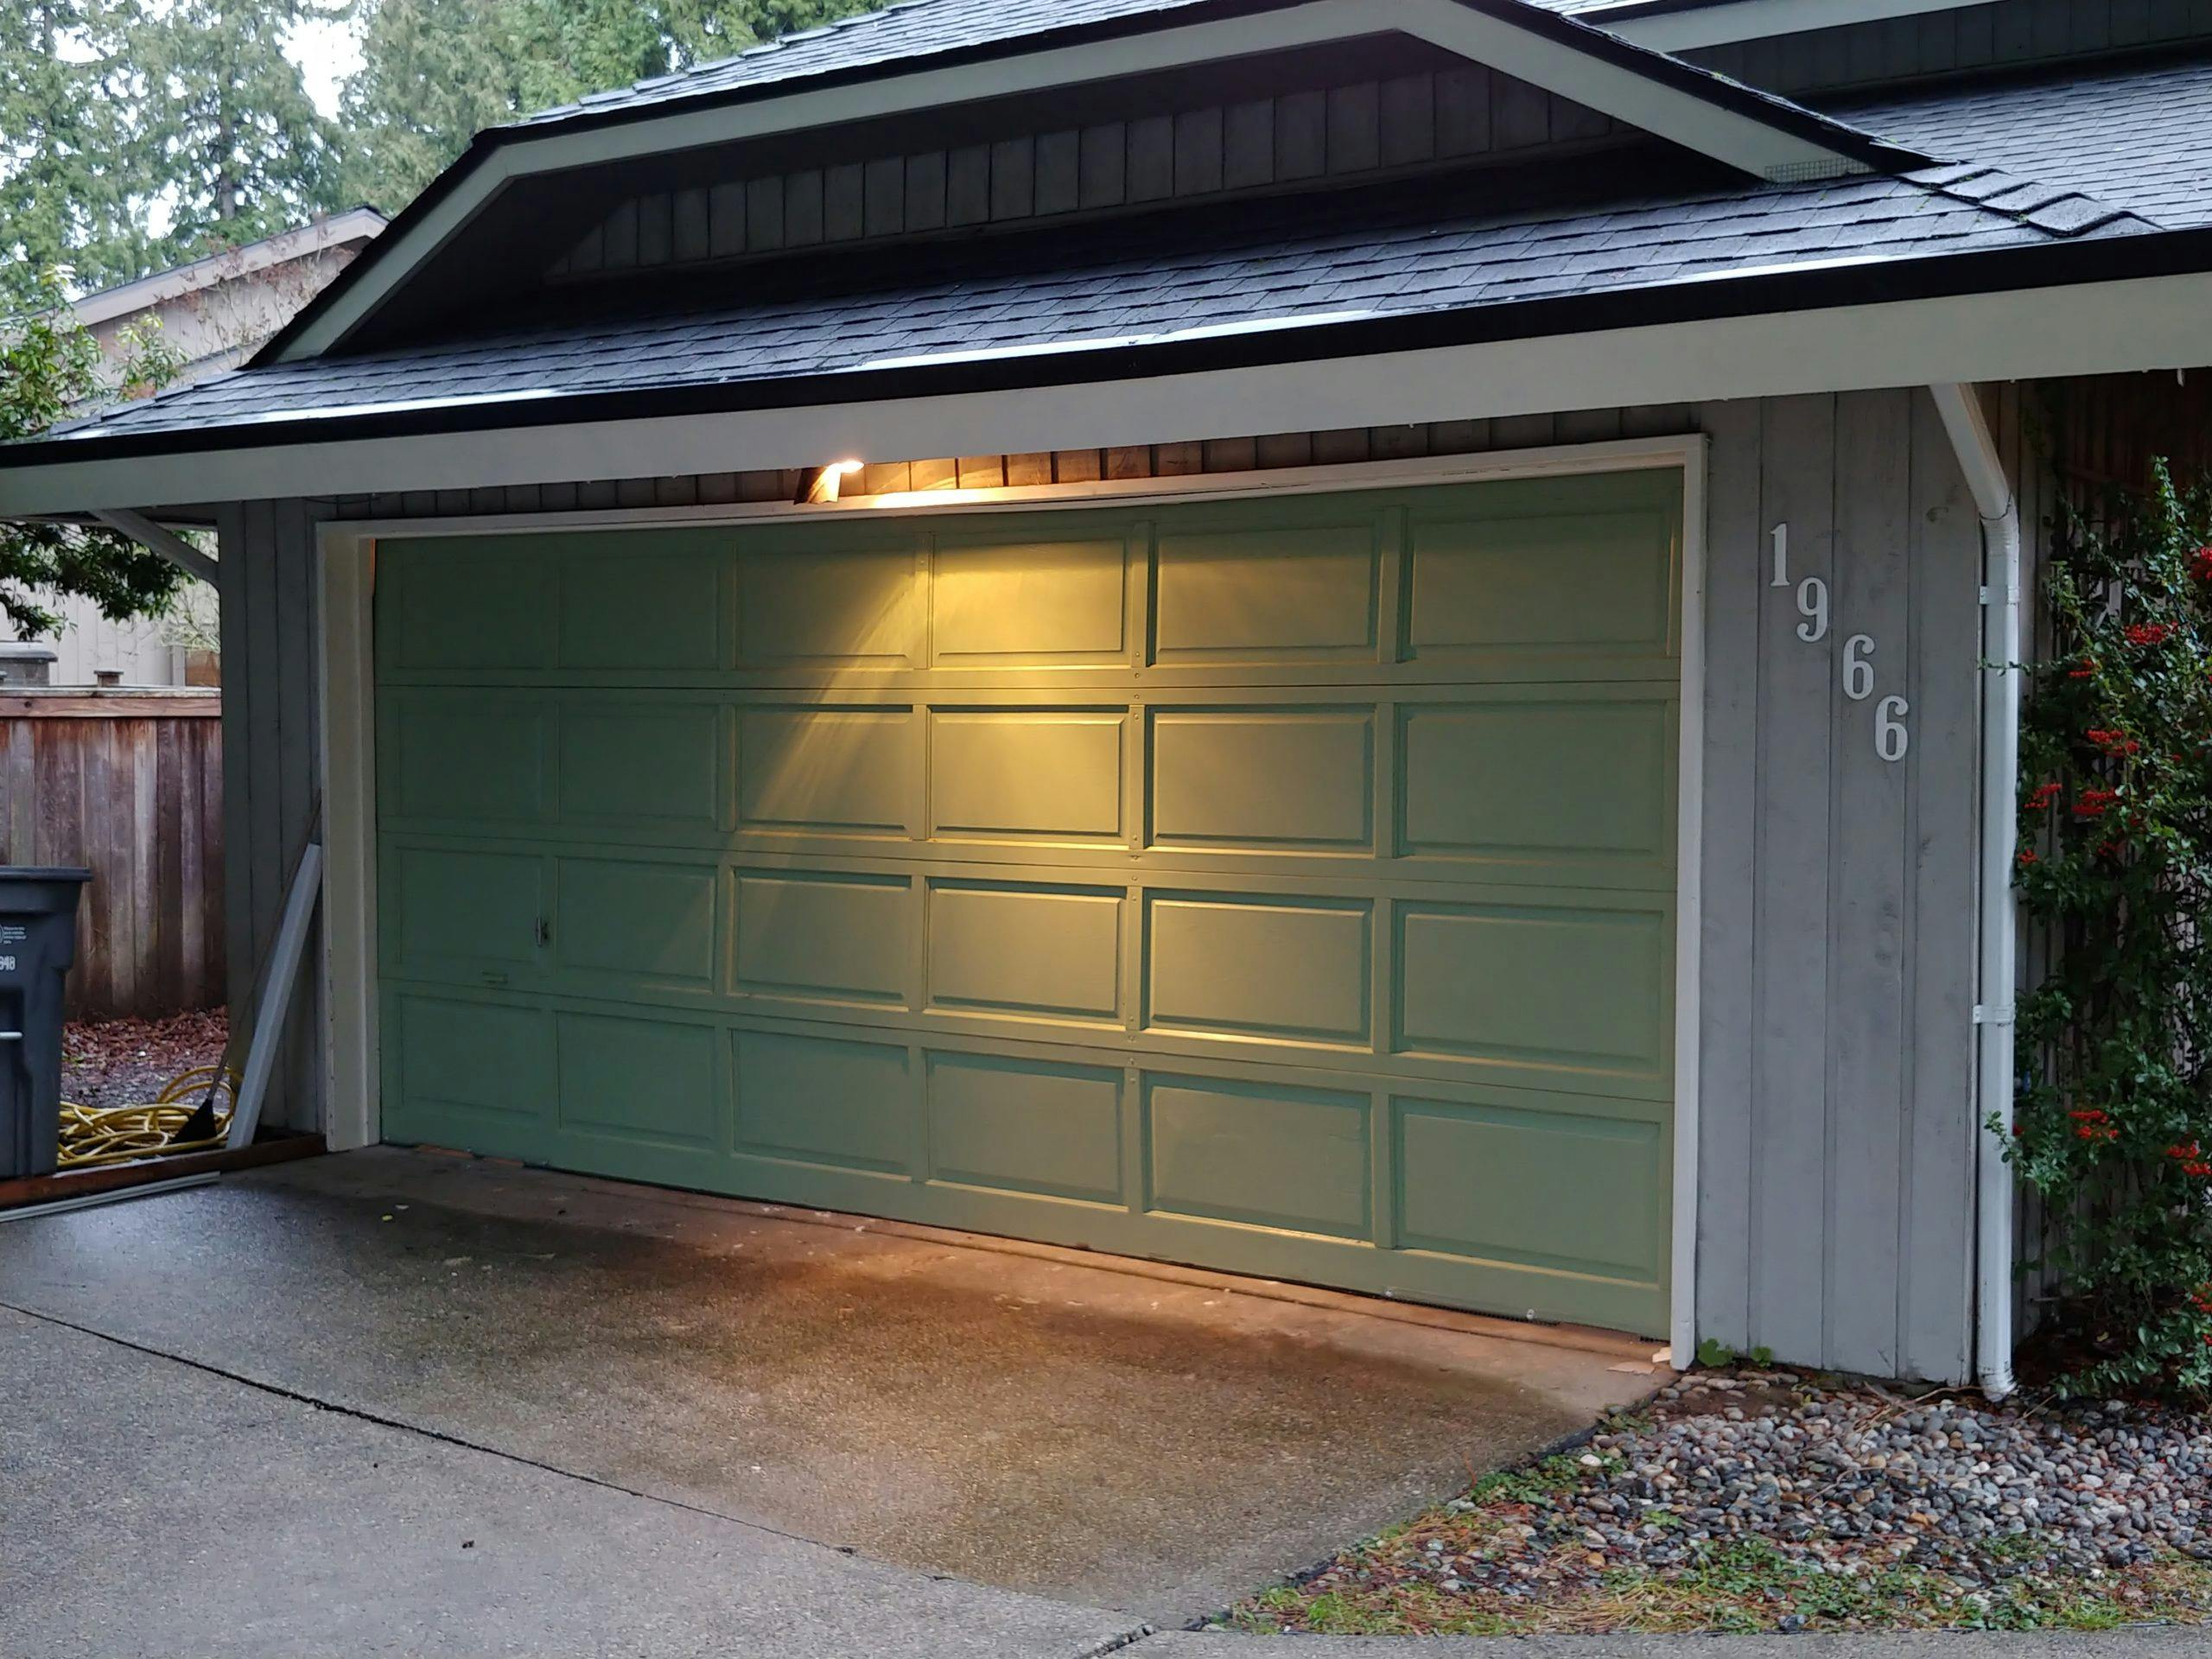 A green garage door